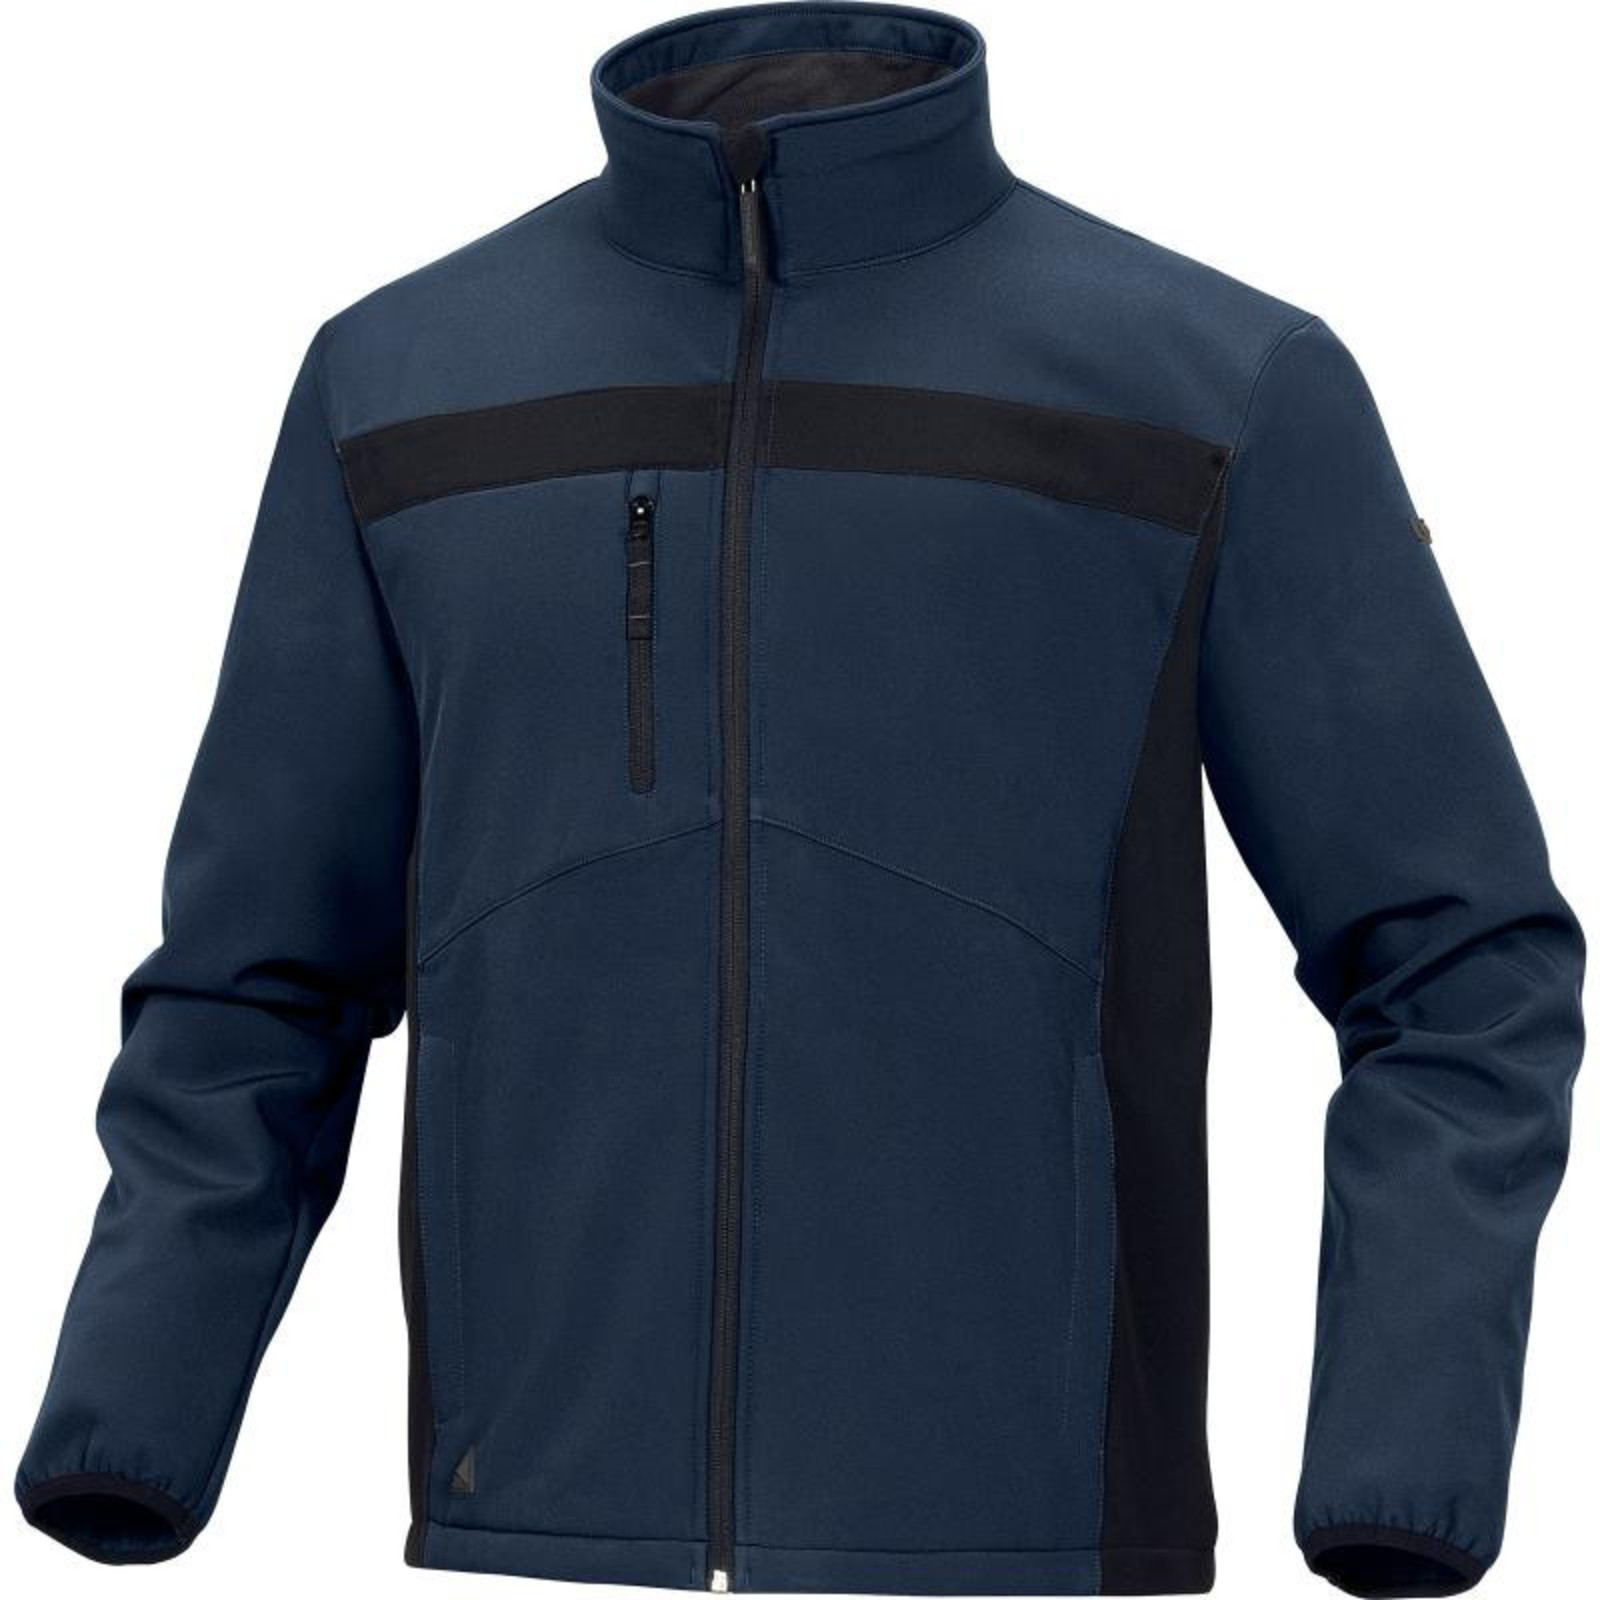 Softshellová bunda Delta Plus Lulea2 - veľkosť: XL, farba: námornícka modrá/čierna